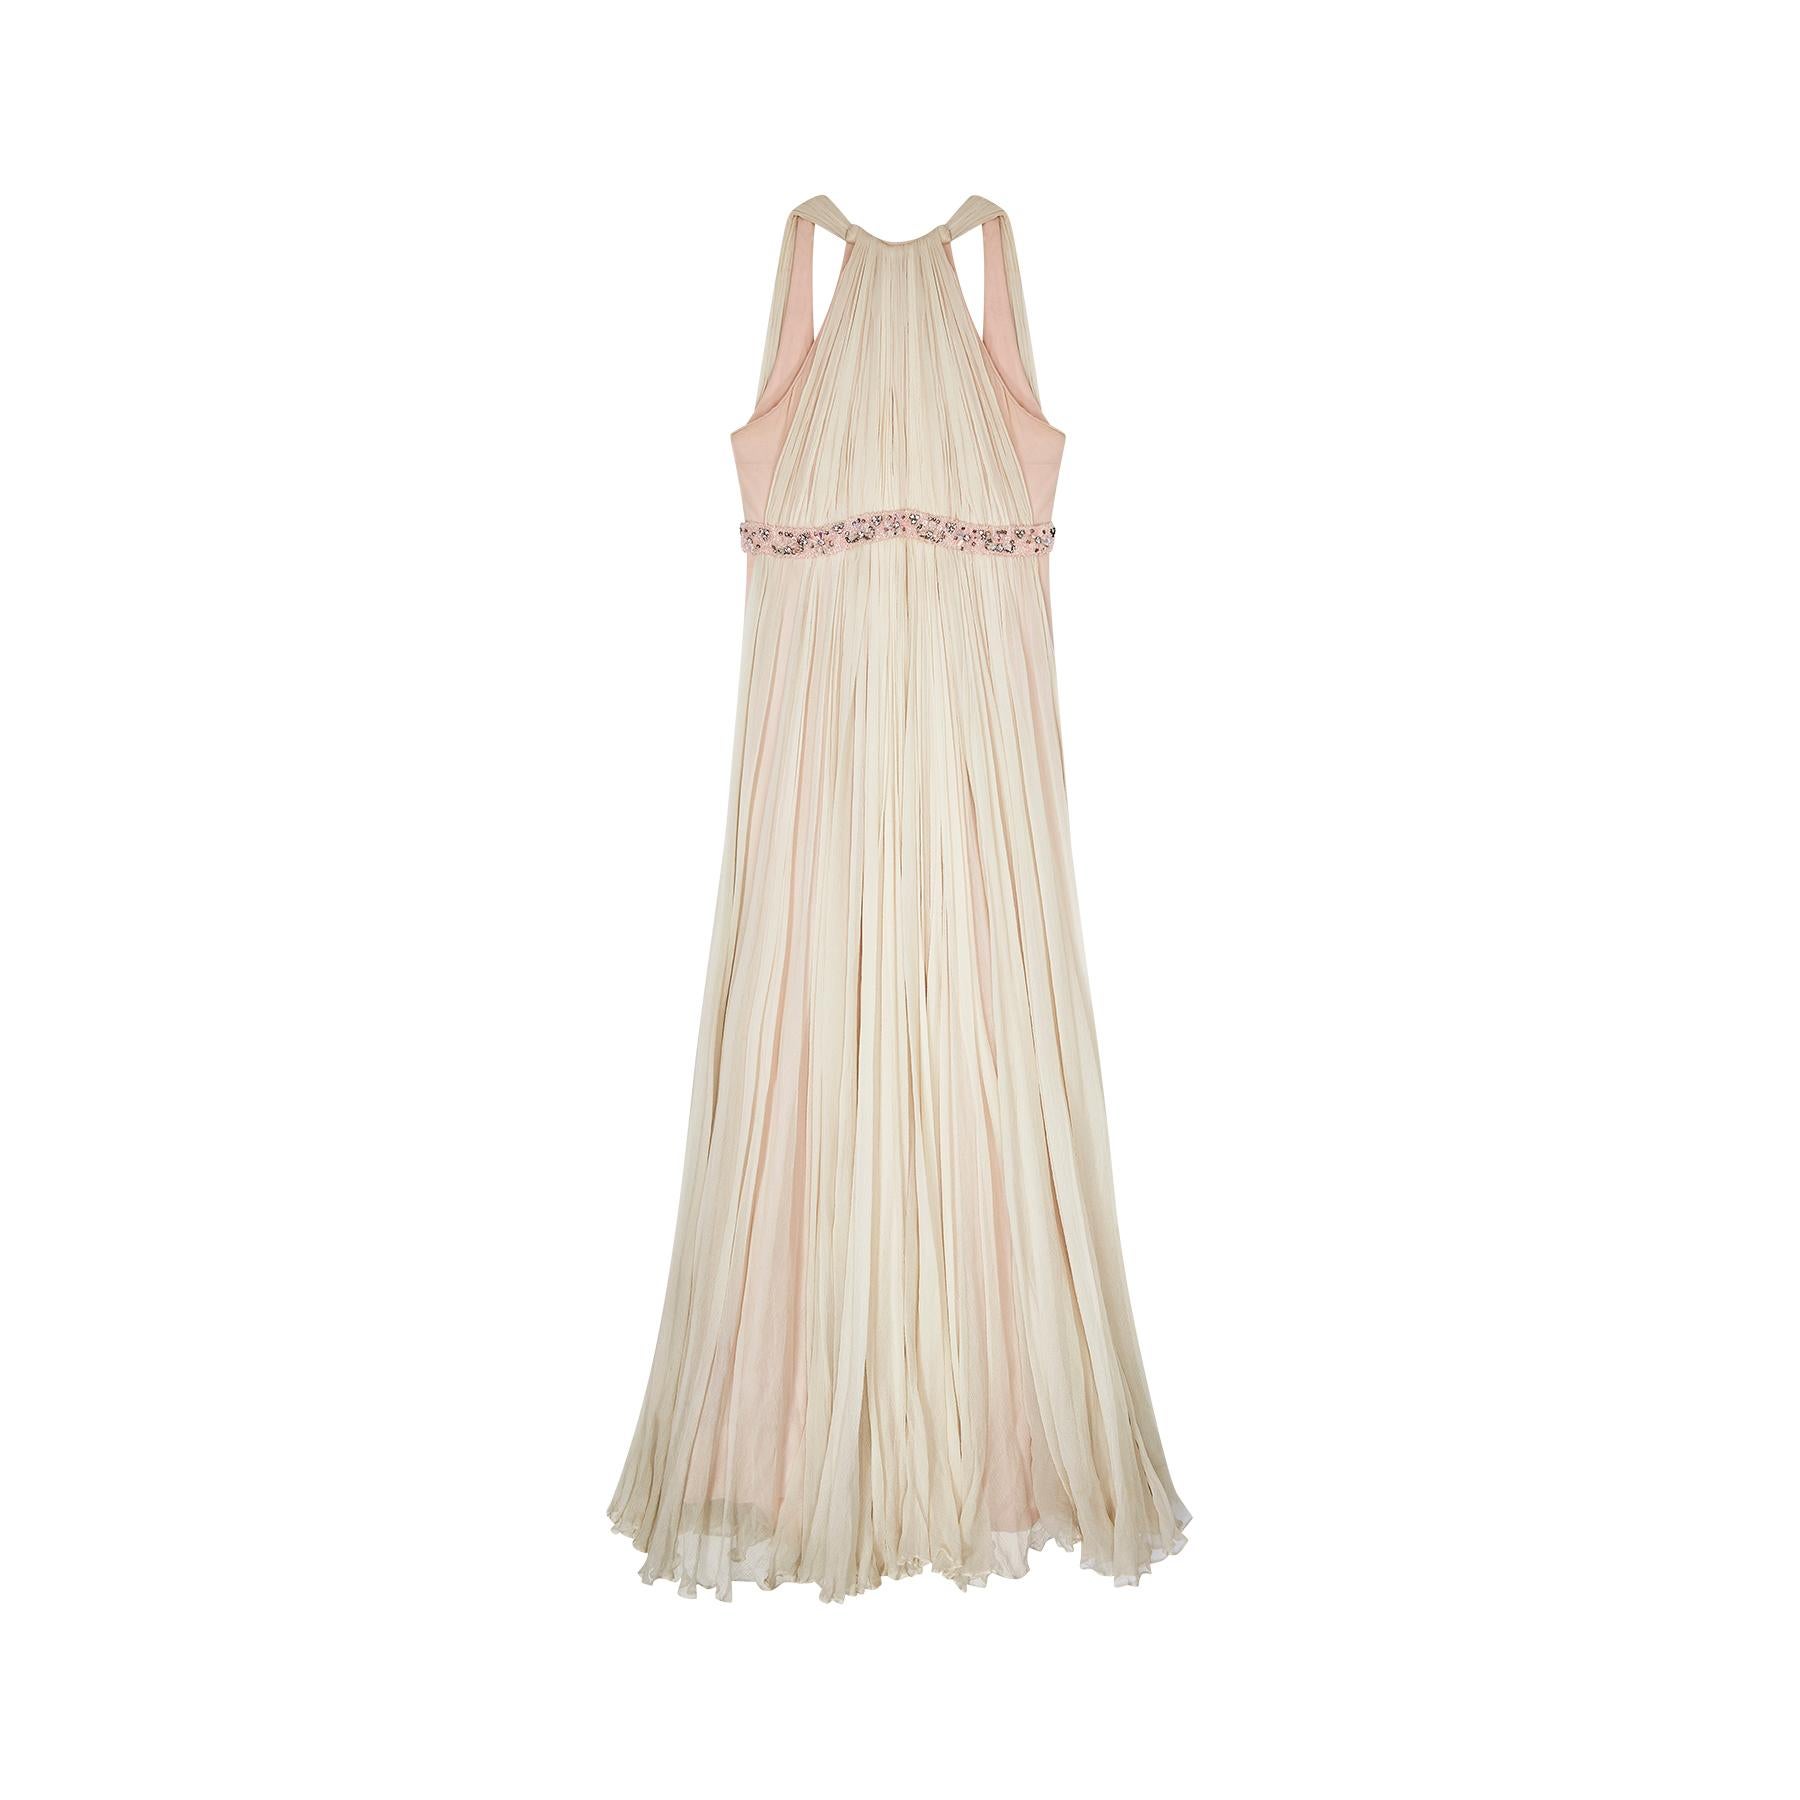 Eine atemberaubende 1960er Couture gemacht plissiert Seide Chiffon Ballerina Stil Cocktail-Kleid von Sarmi of New York. Dieses zauberhafte Kleid ist mit einer Empire-Büste aus Kristall, Bügelperlen und Diamantperlen verziert. Die Faltung des